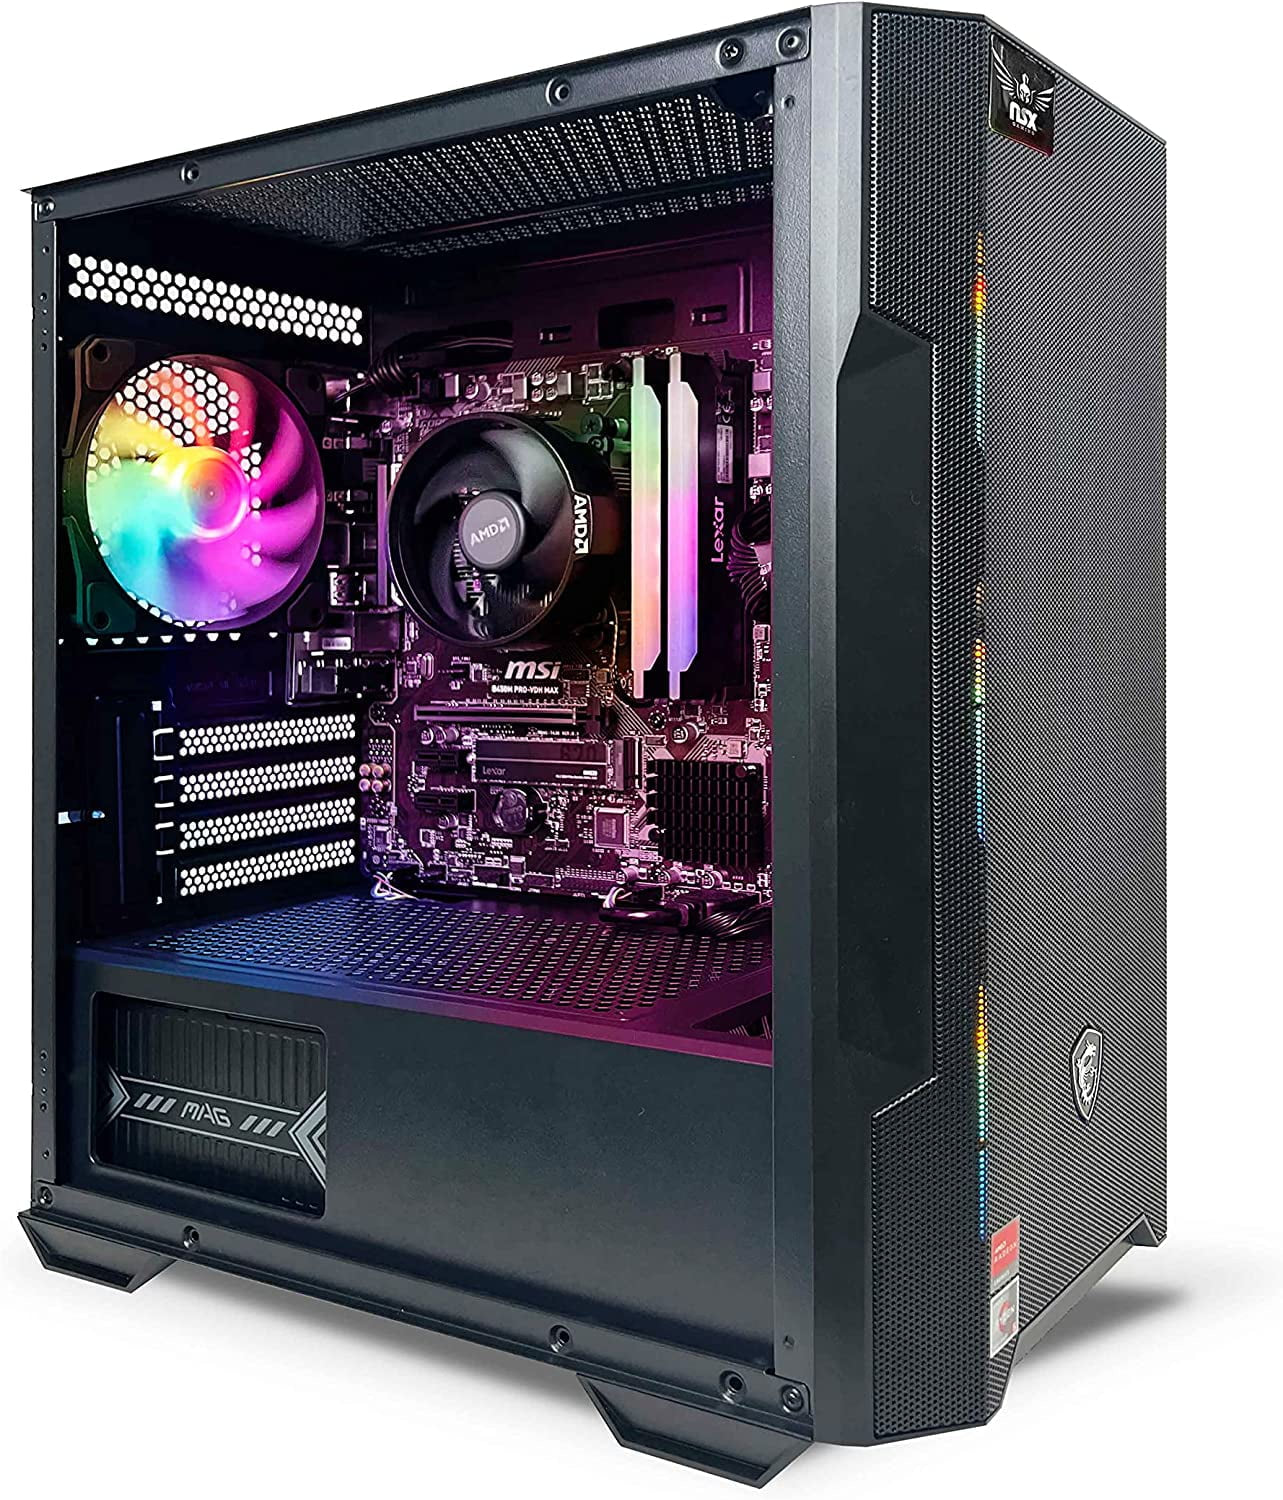 PC - AMD Ryzen 5 5600G, 16 Gb DDR4 3600, 512 Gb M2 Nvme SSD, RGB Fans, Windows 11 Home